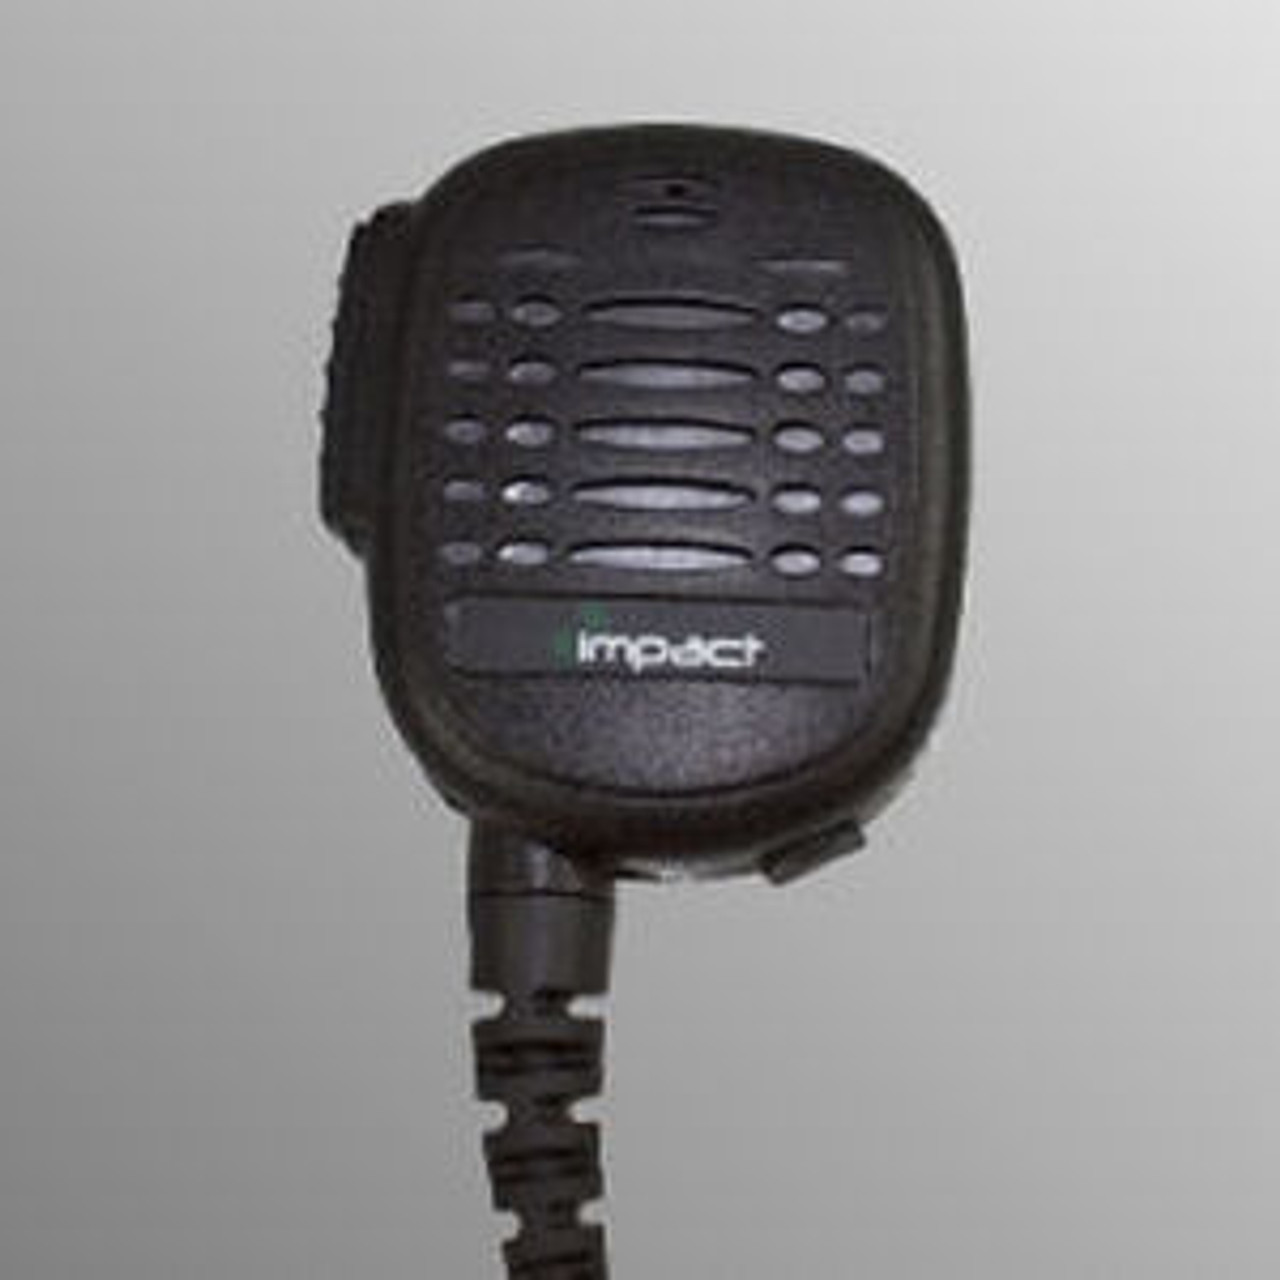 Relm RPU3600 Noise Canceling Speaker Mic.